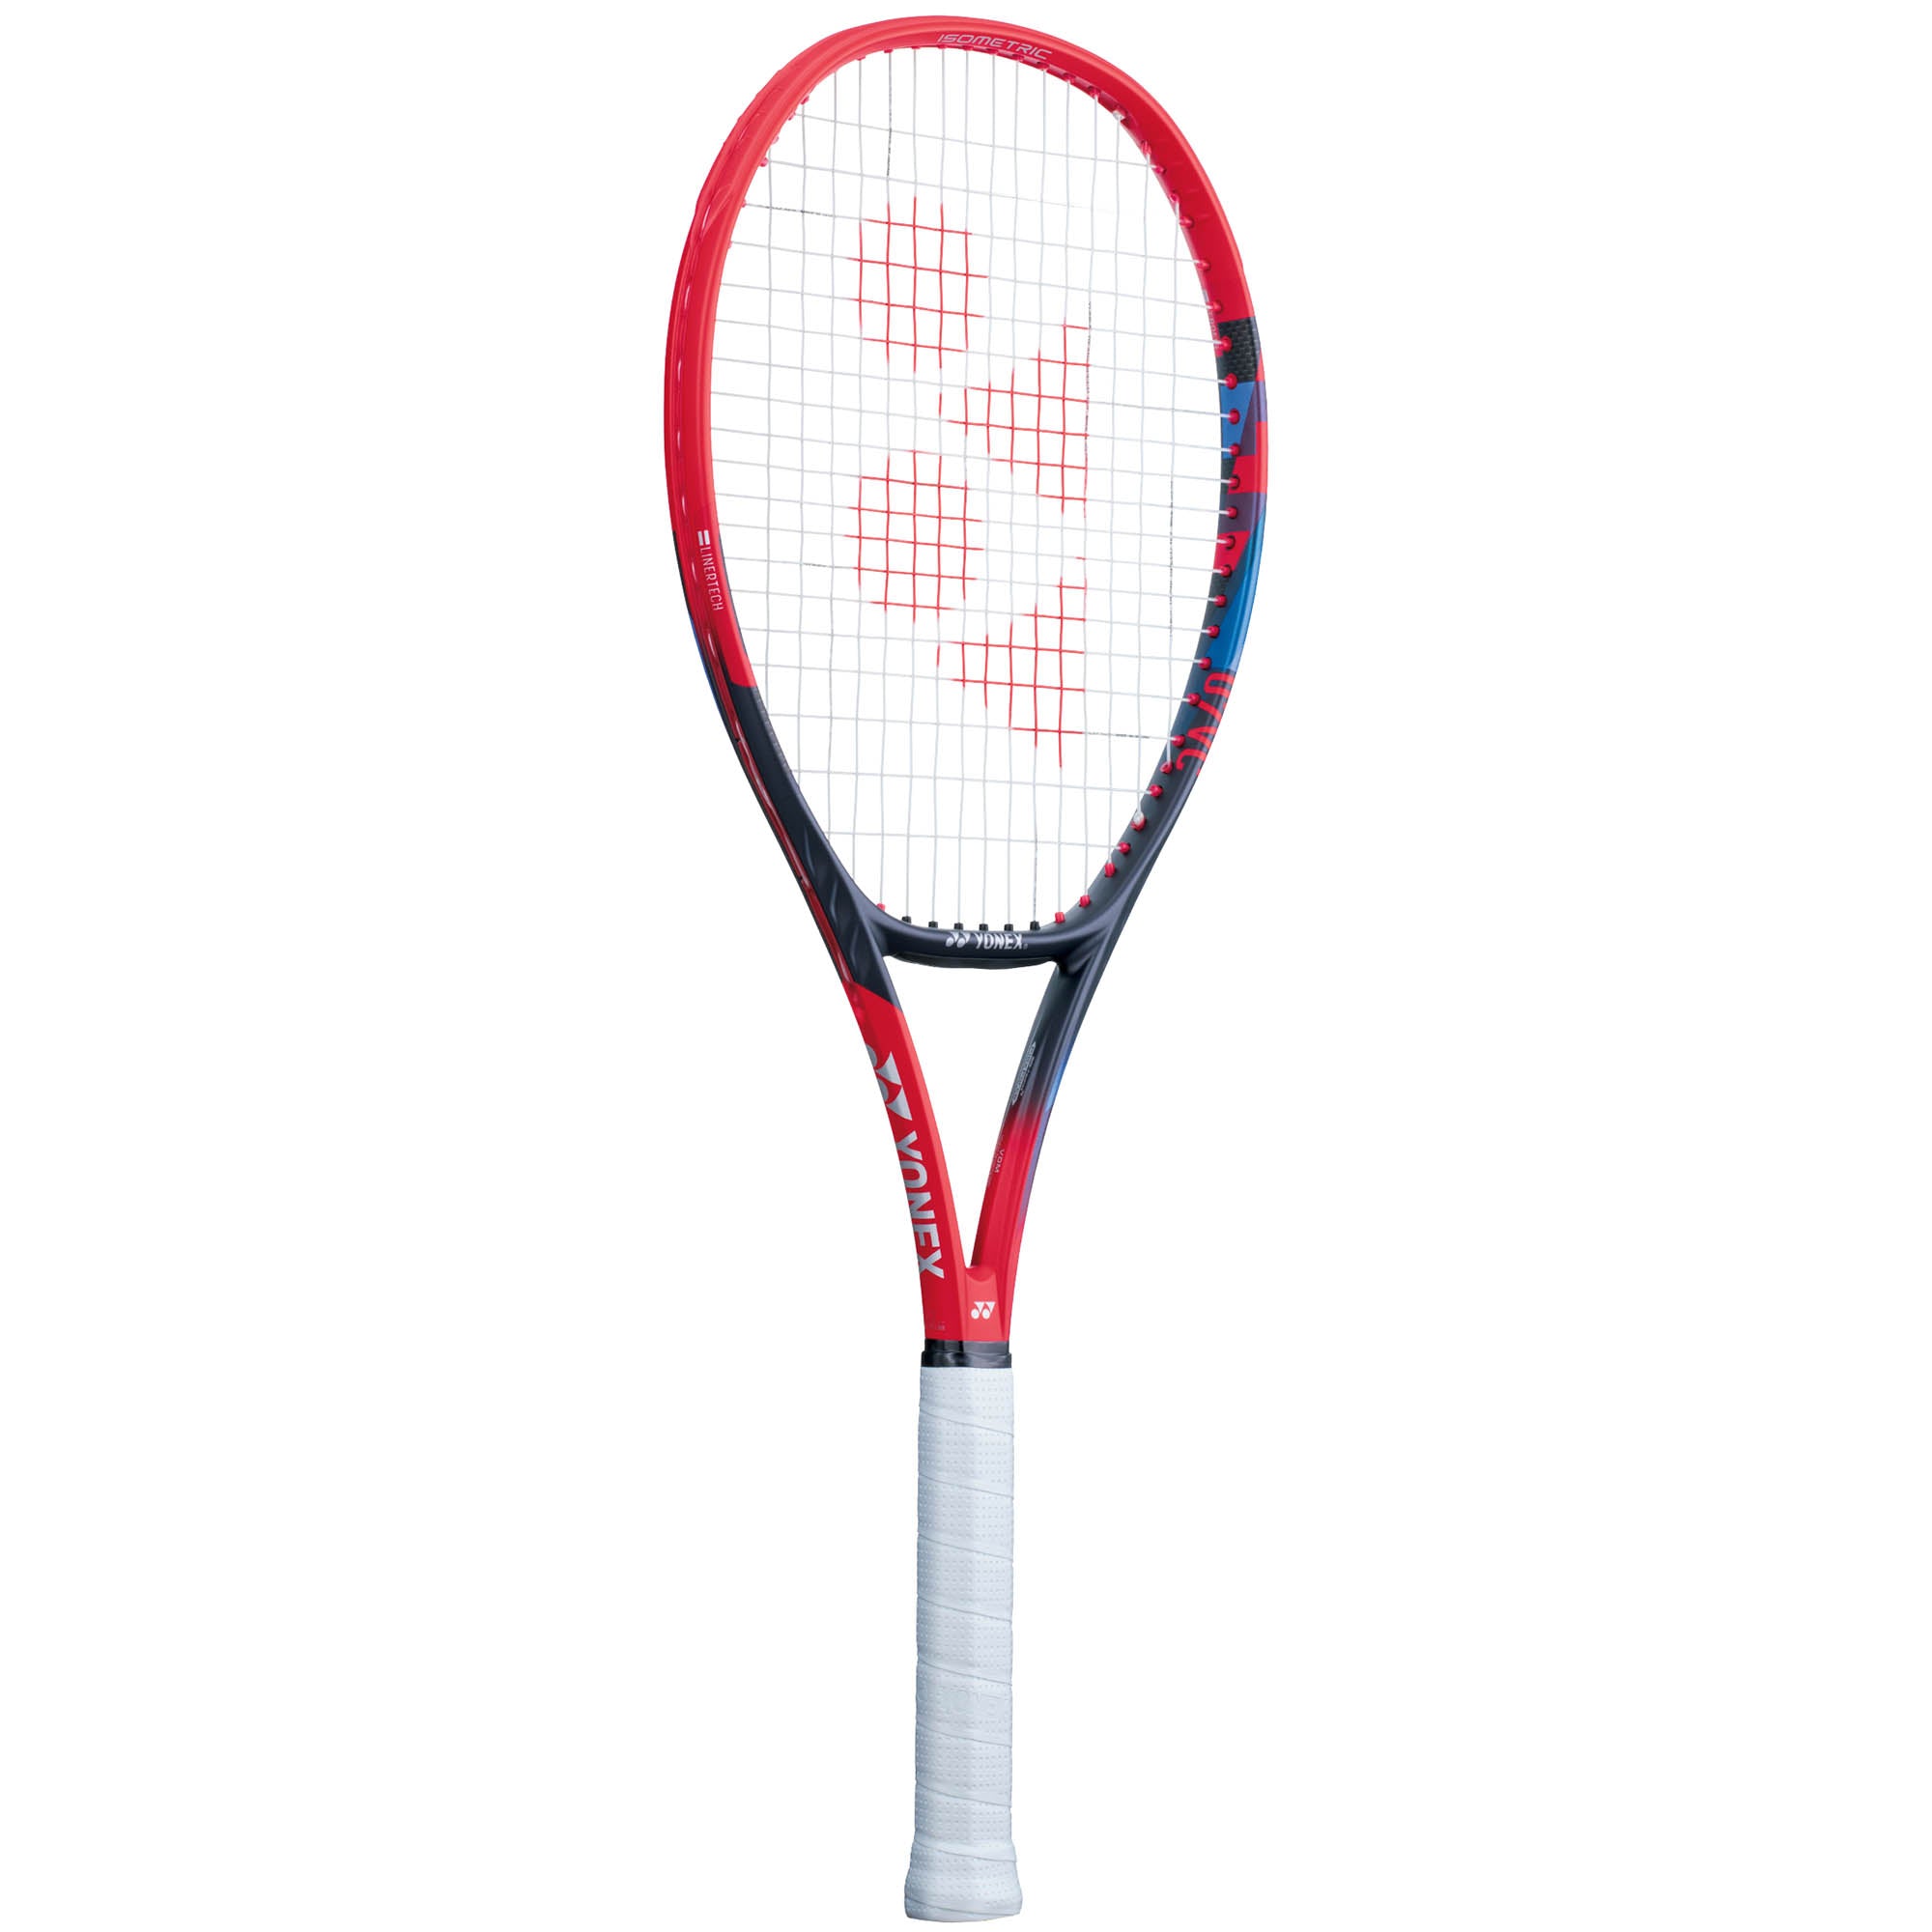 Yonex VCORE 98 LG Tennis Racket